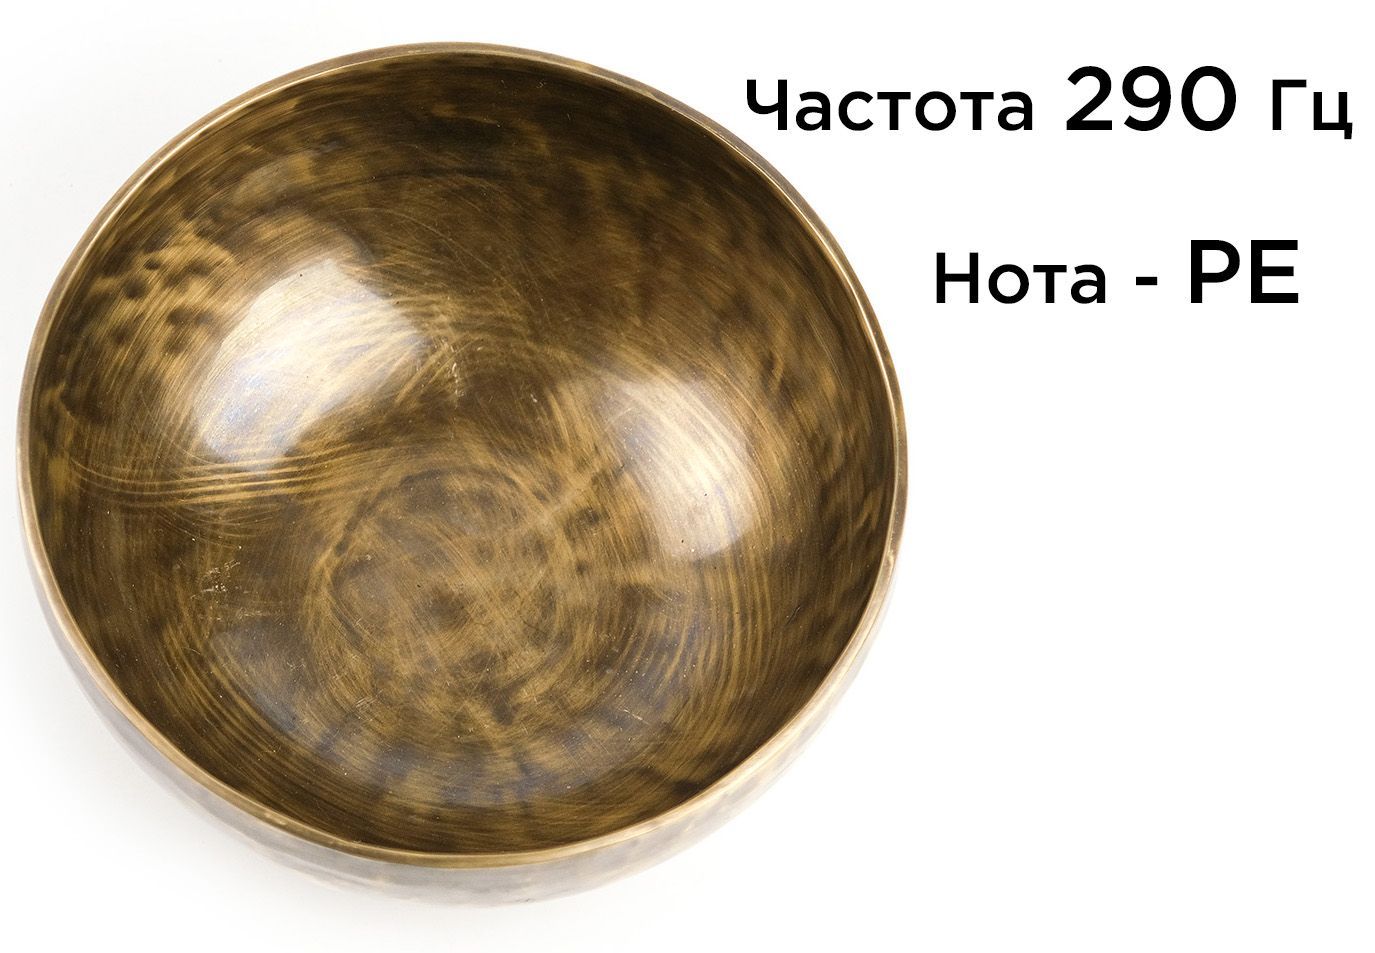 Кованая поющая чаша Тибет (18 см) звукотерапия